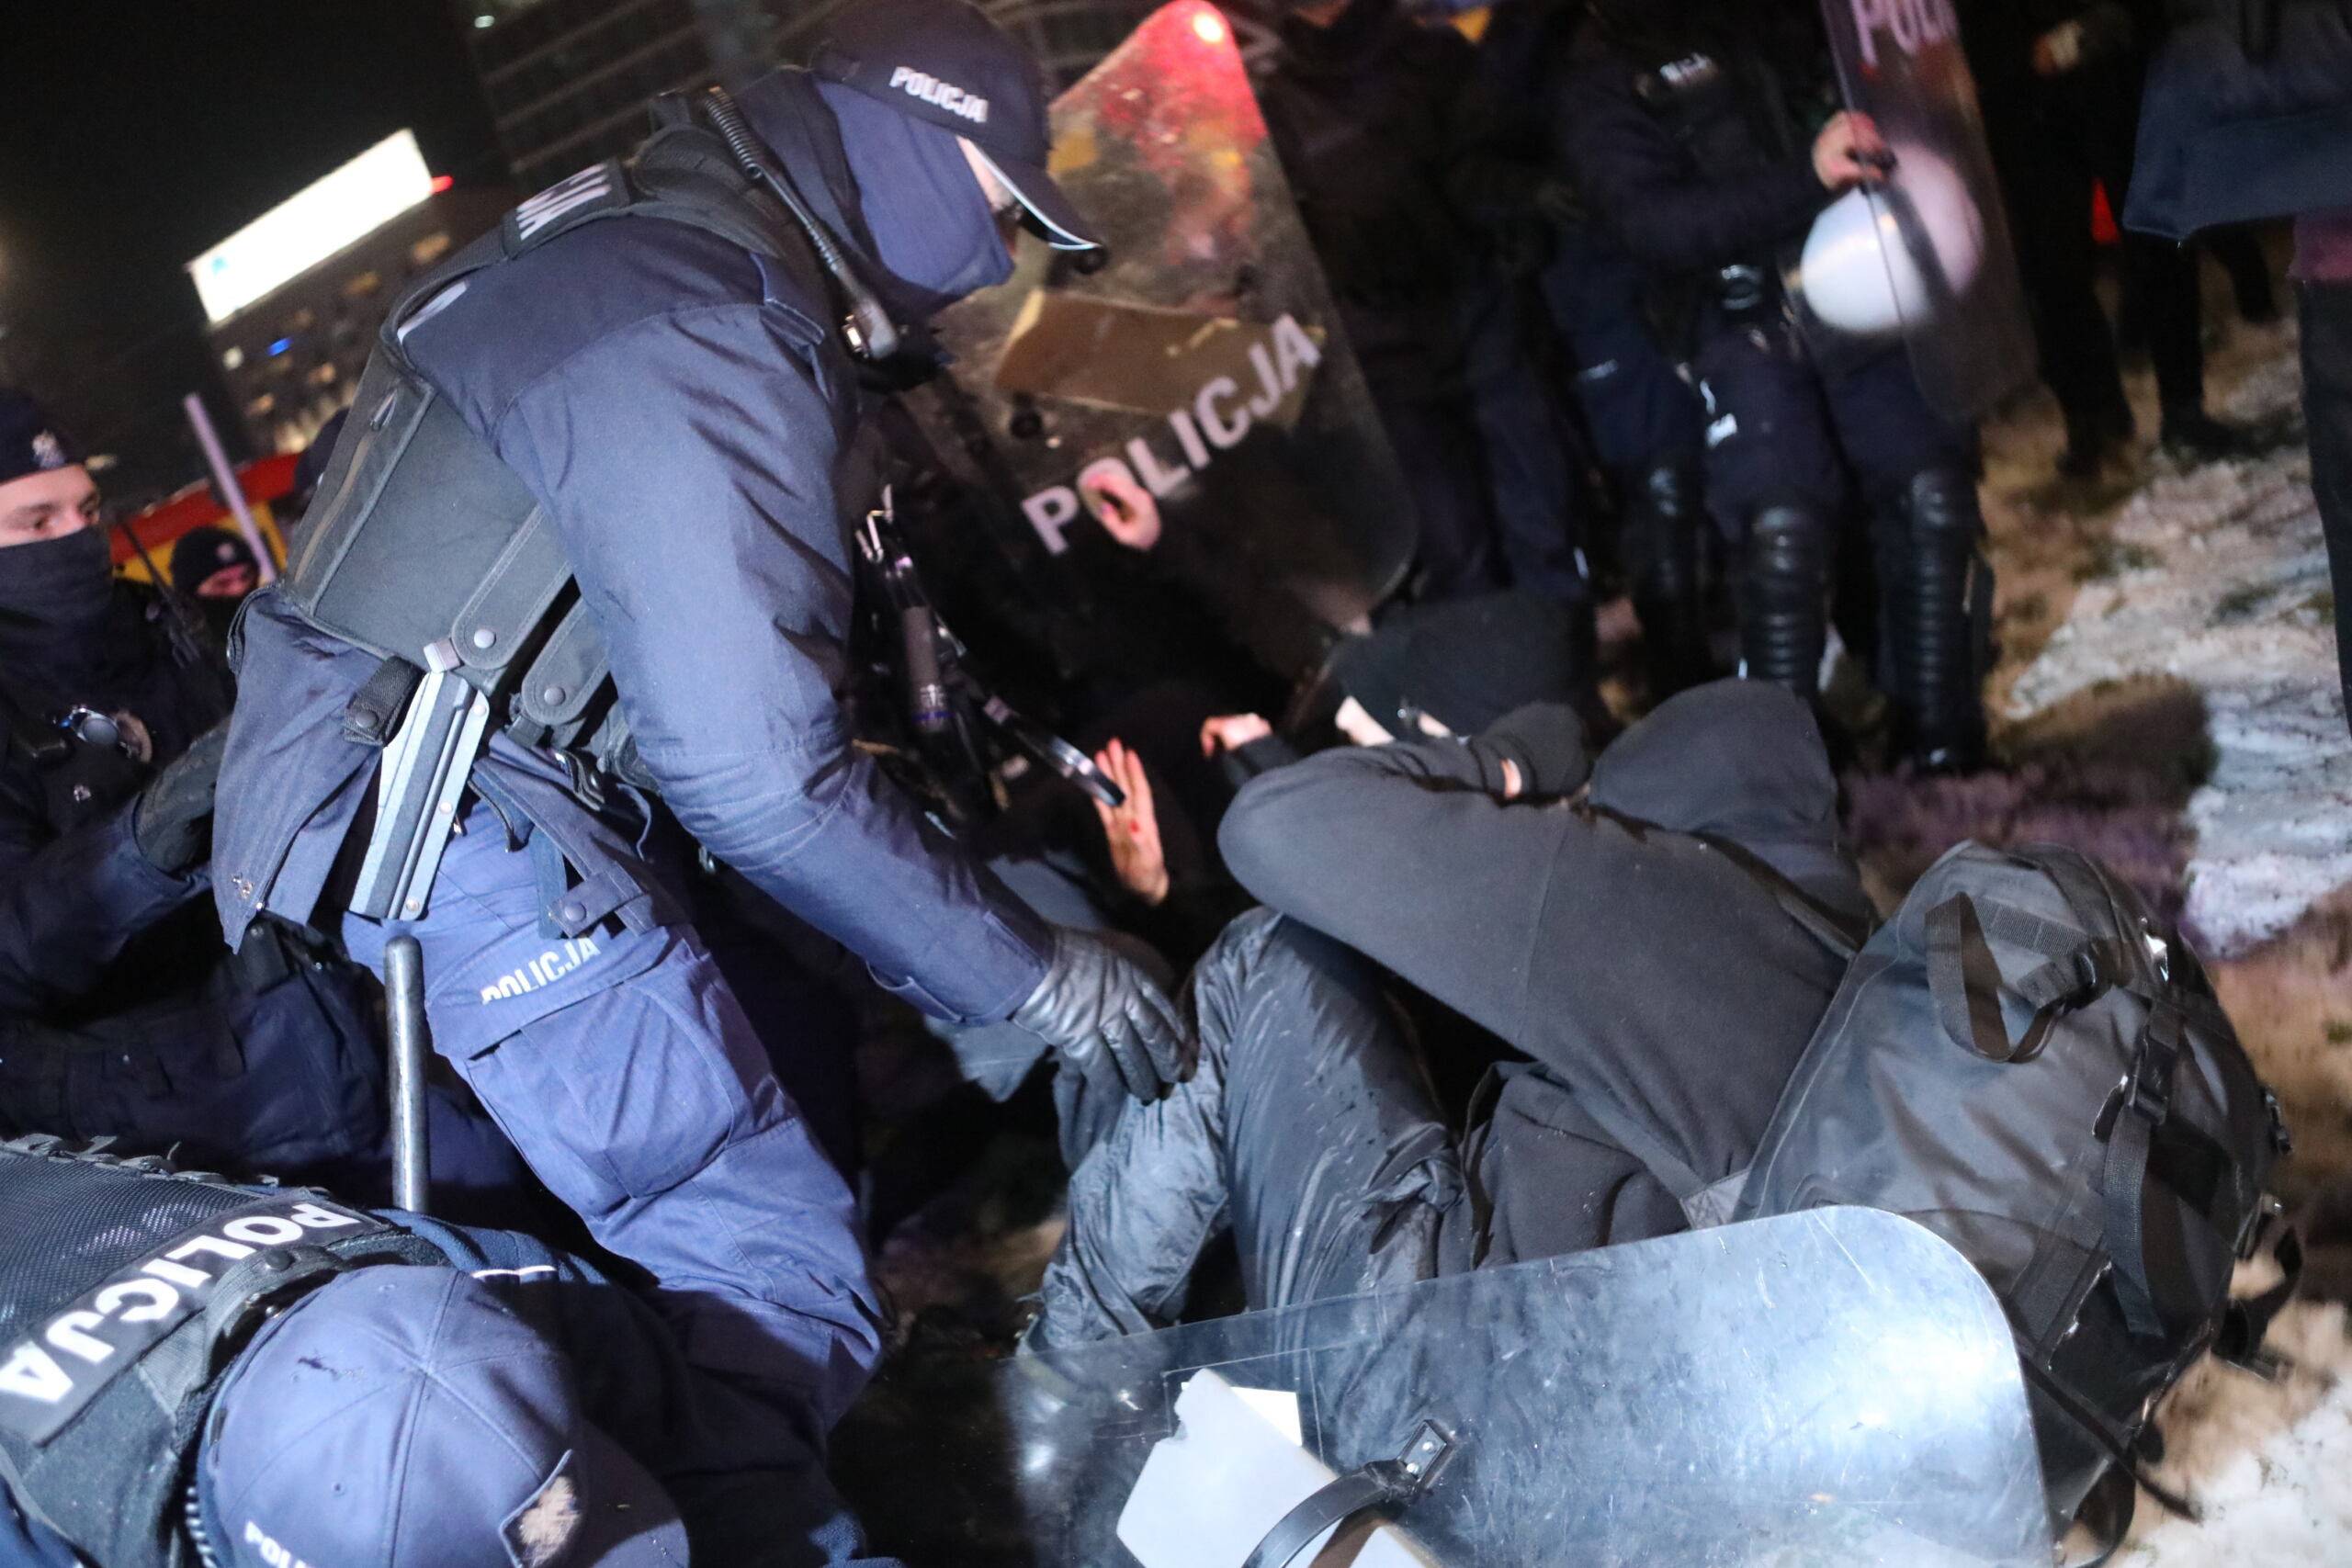 Zatrzymanie podczas demonstracji 20.01.21 w Warszawie